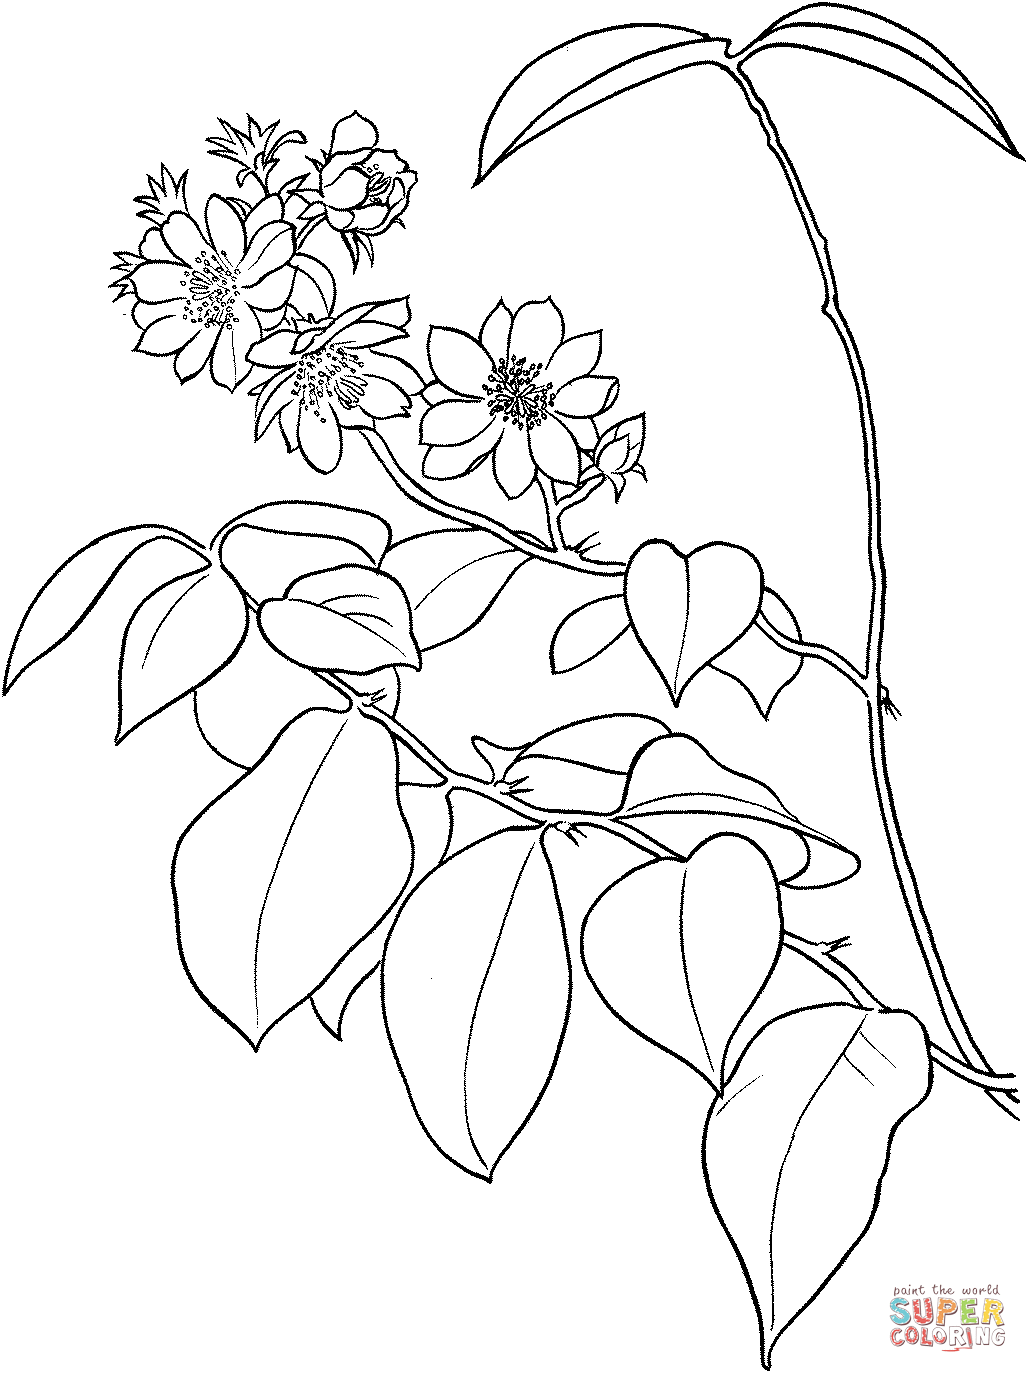 Pereskia Aculeata ou groselha de Barbados ou cacto de folha de cacto